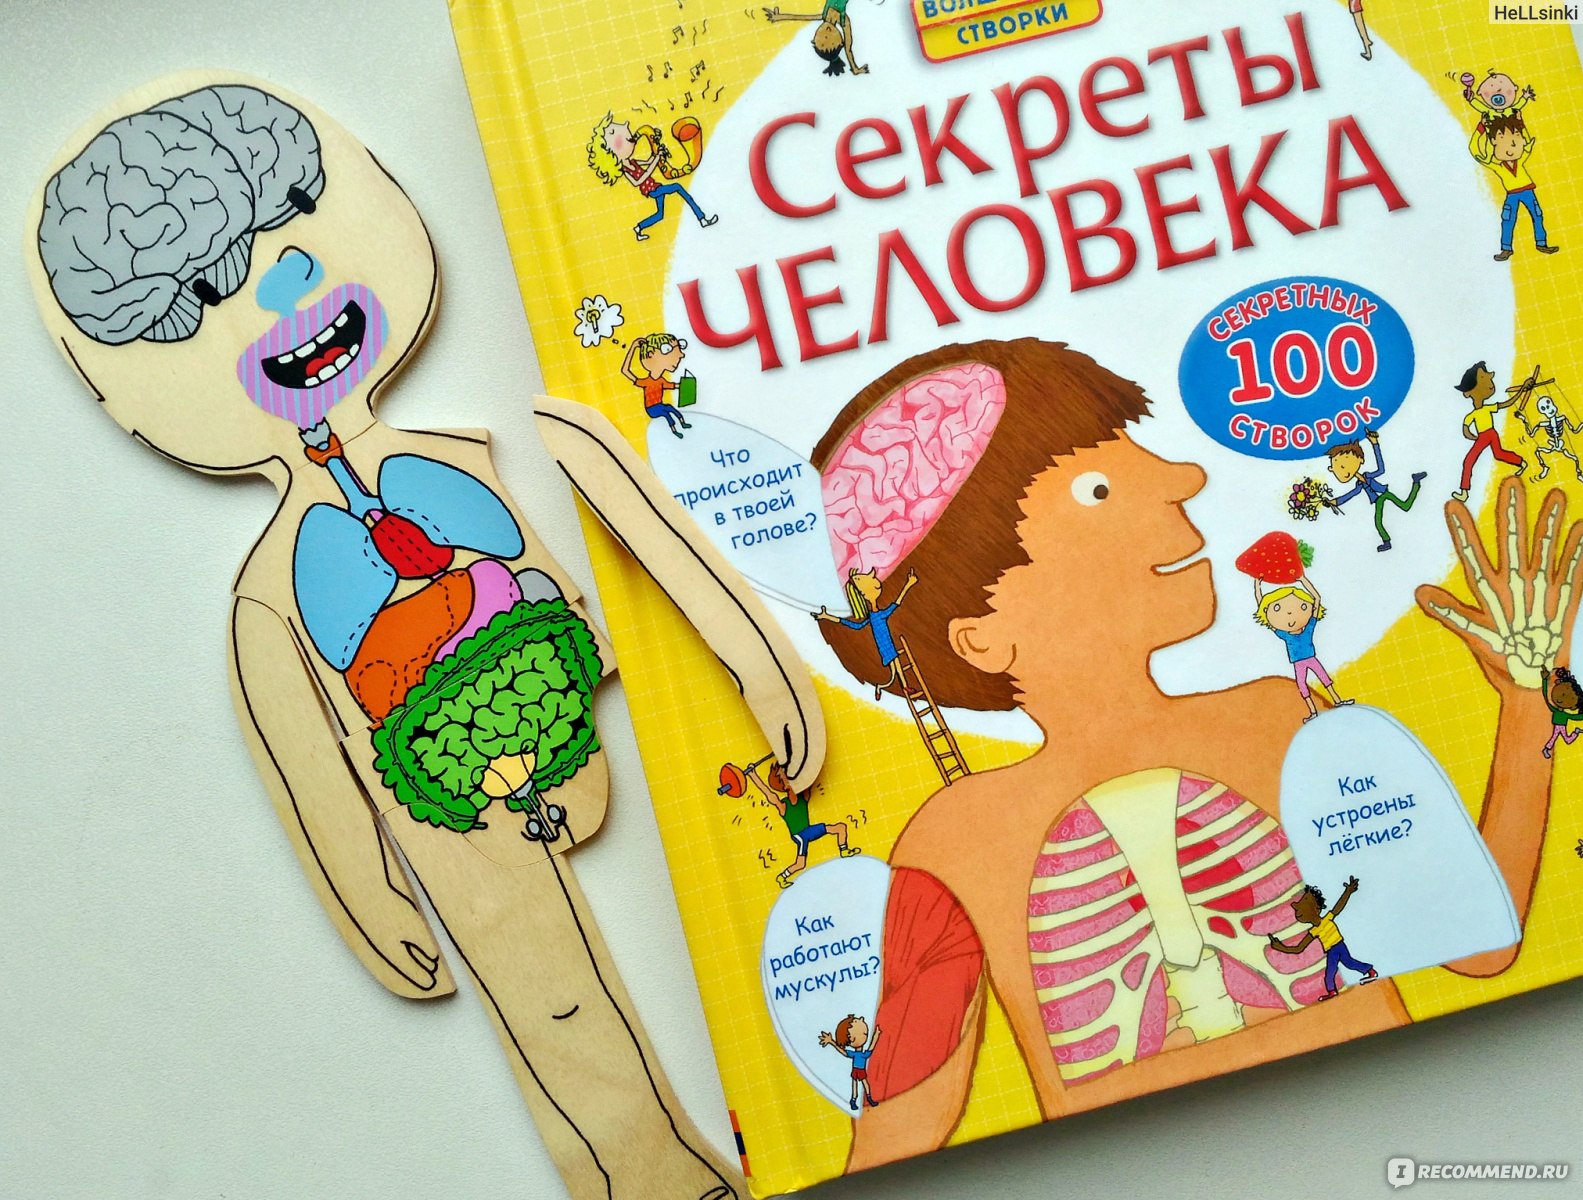 Детская книжка про тело человека